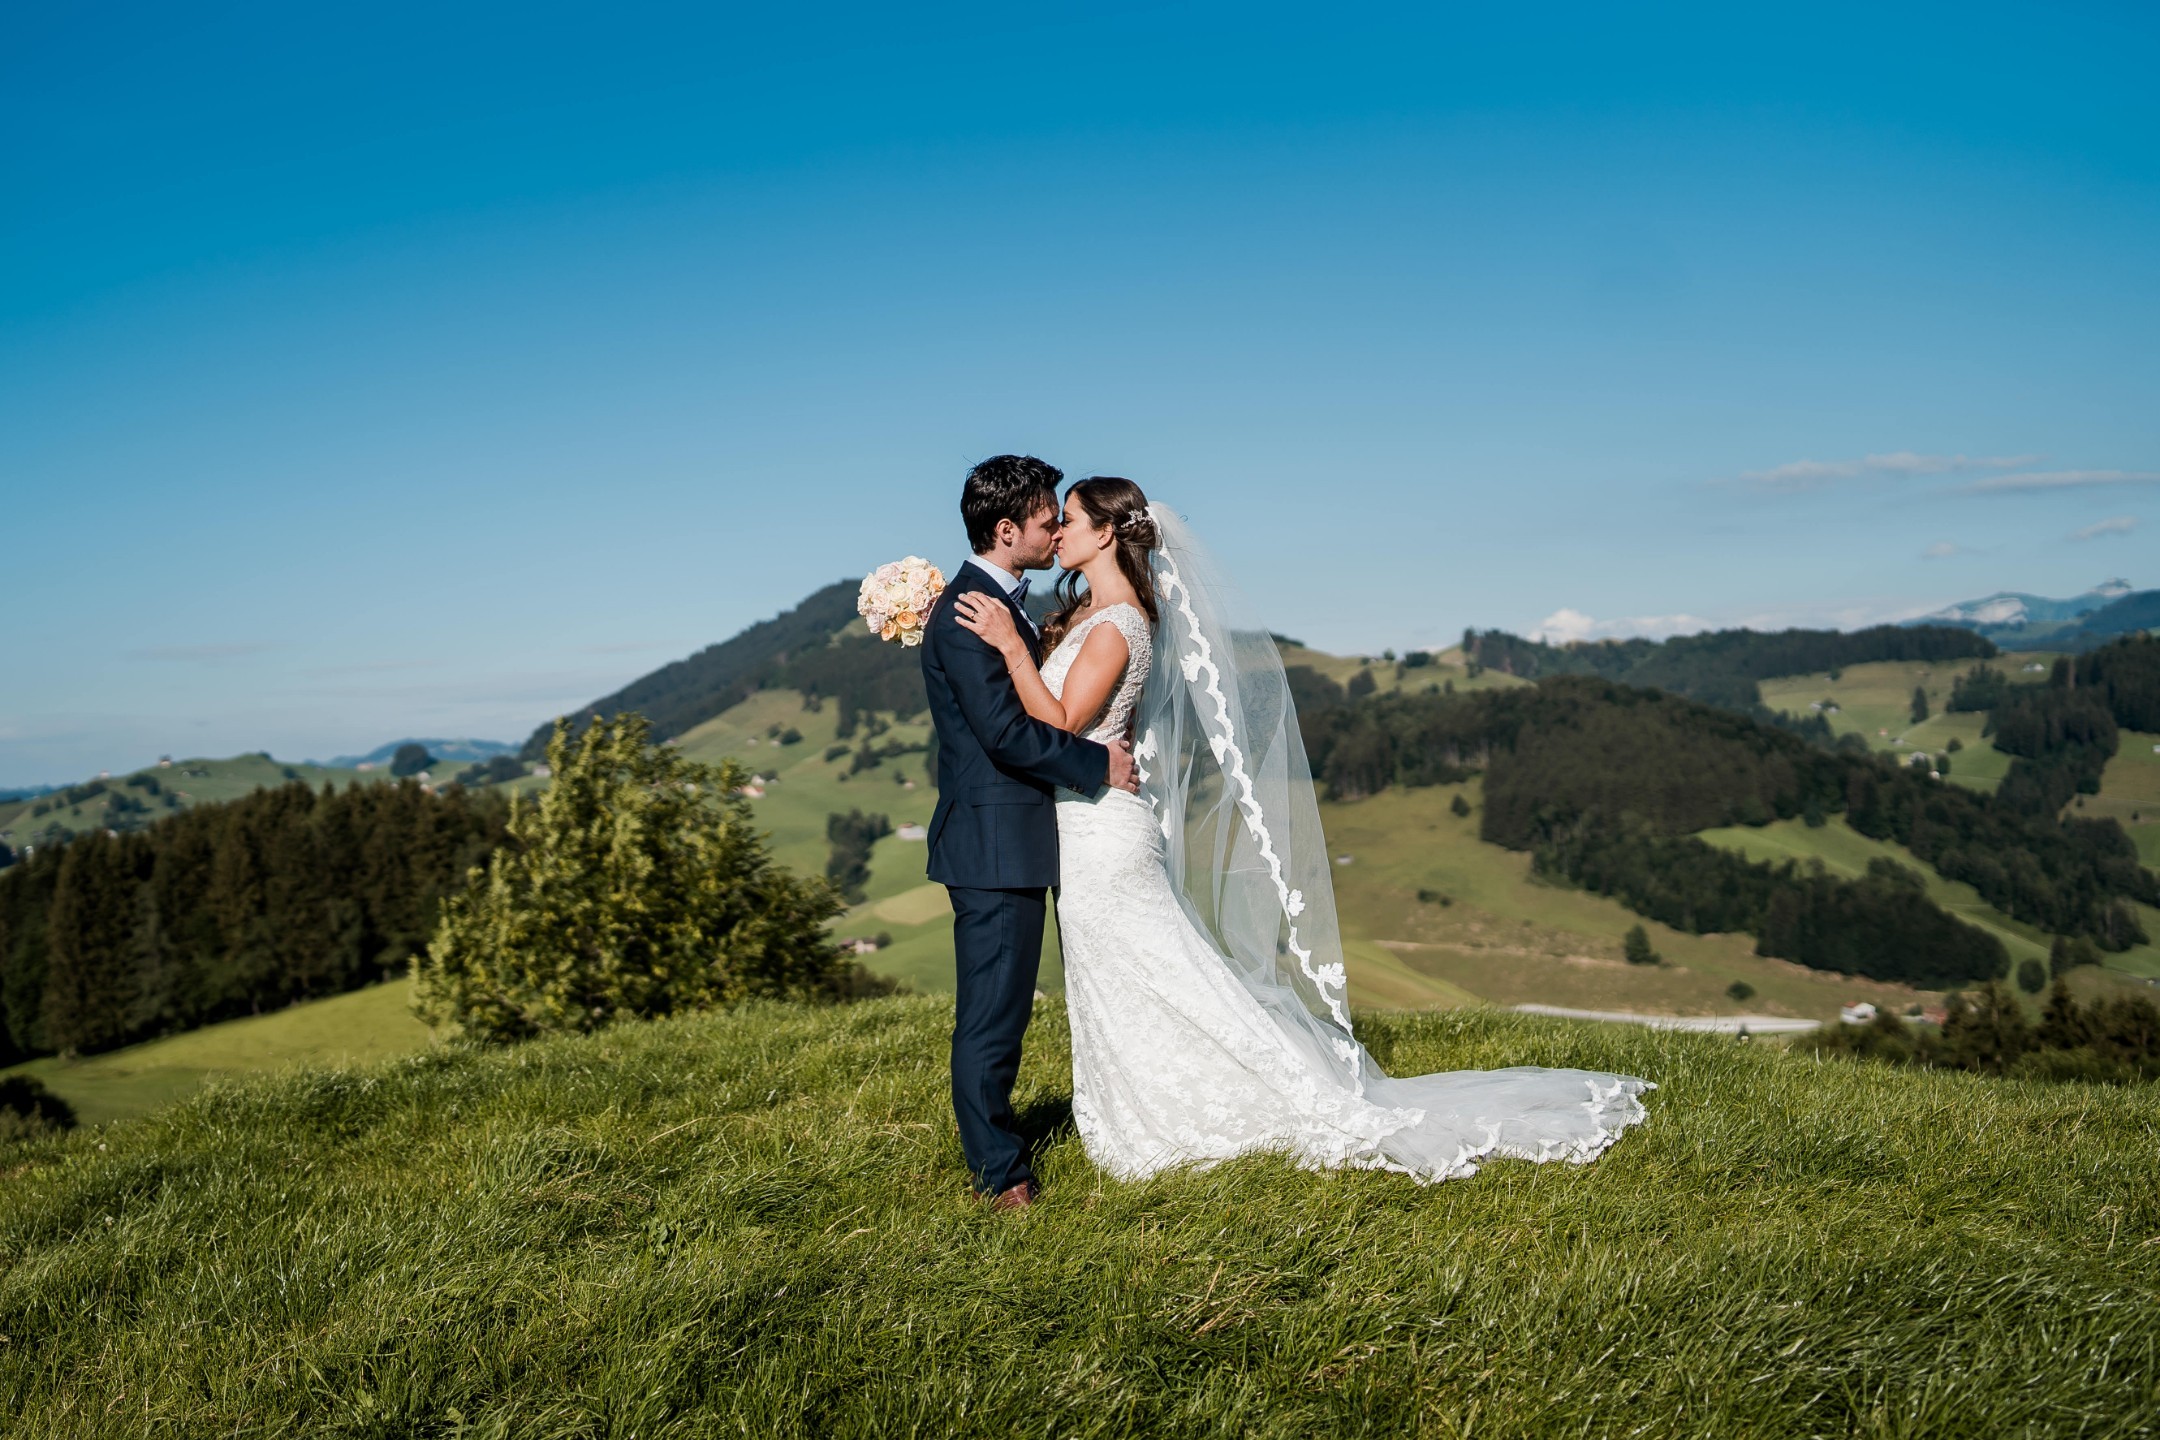 Aida + Tim | Hochzeitsfotografen am Bodensee Haldenhof Urnäsch- Hochzeit in der Schweiz  - Hochzeitsfotografie von Aida und Tim